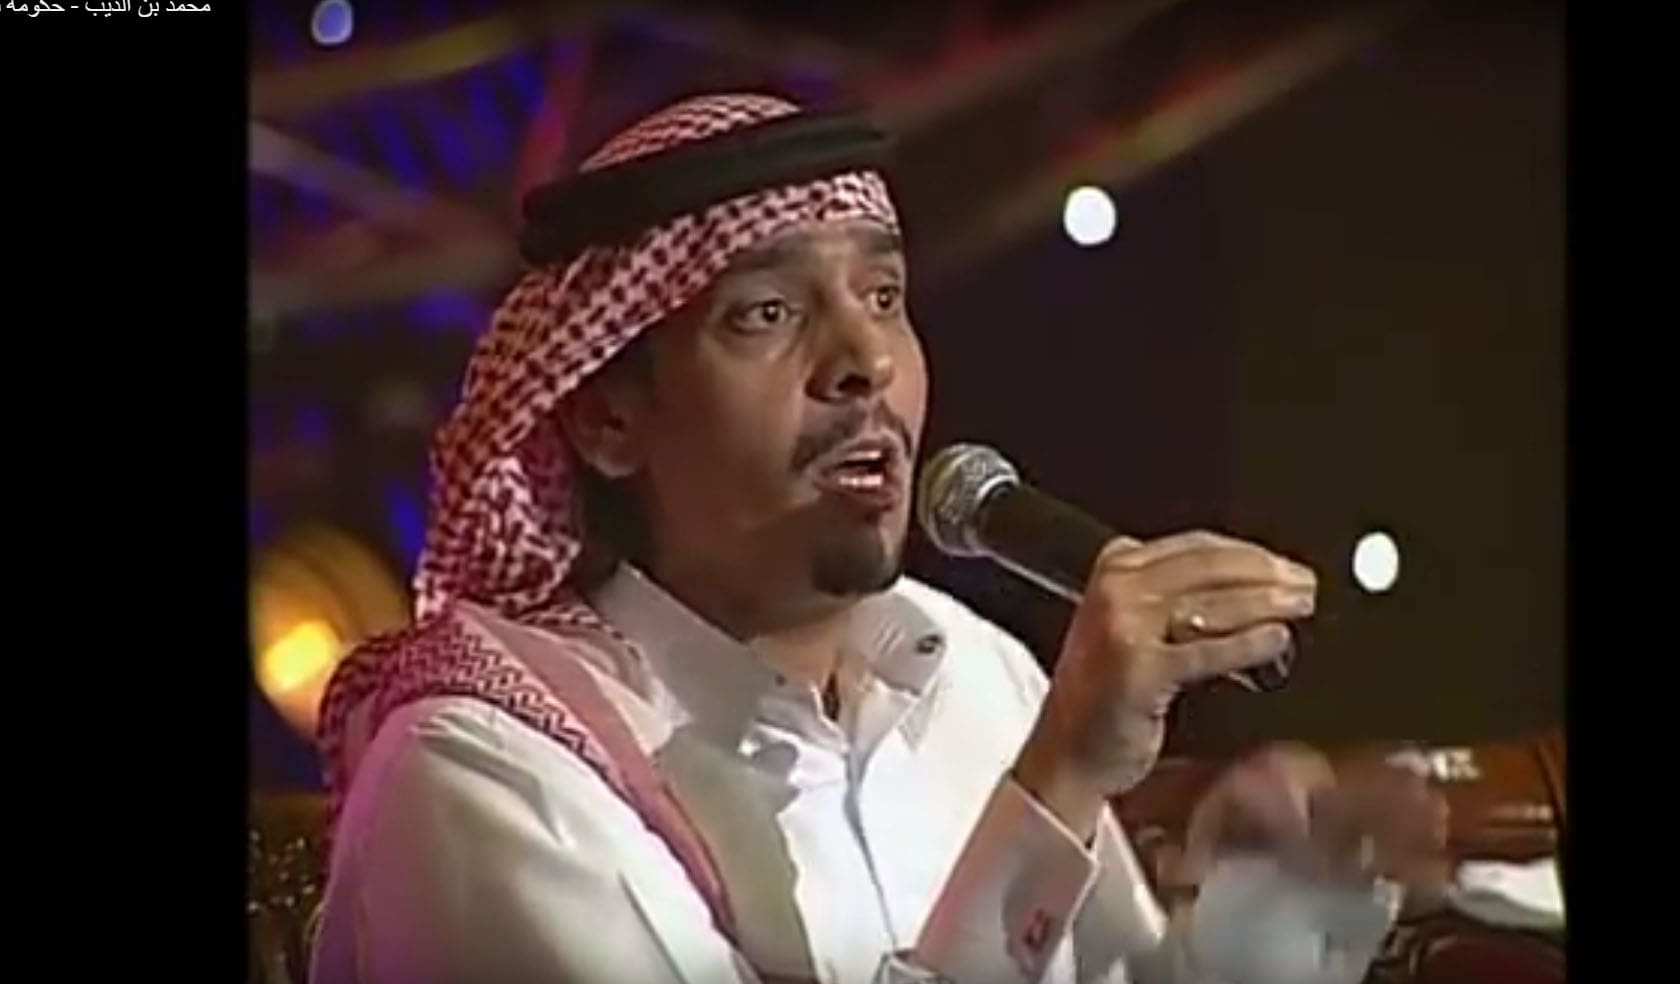 بعد سجنه والعفو عنه.. ناشطون يتداولون قصيدة لـ"ابن الذيب" يمتدح أمير قطر